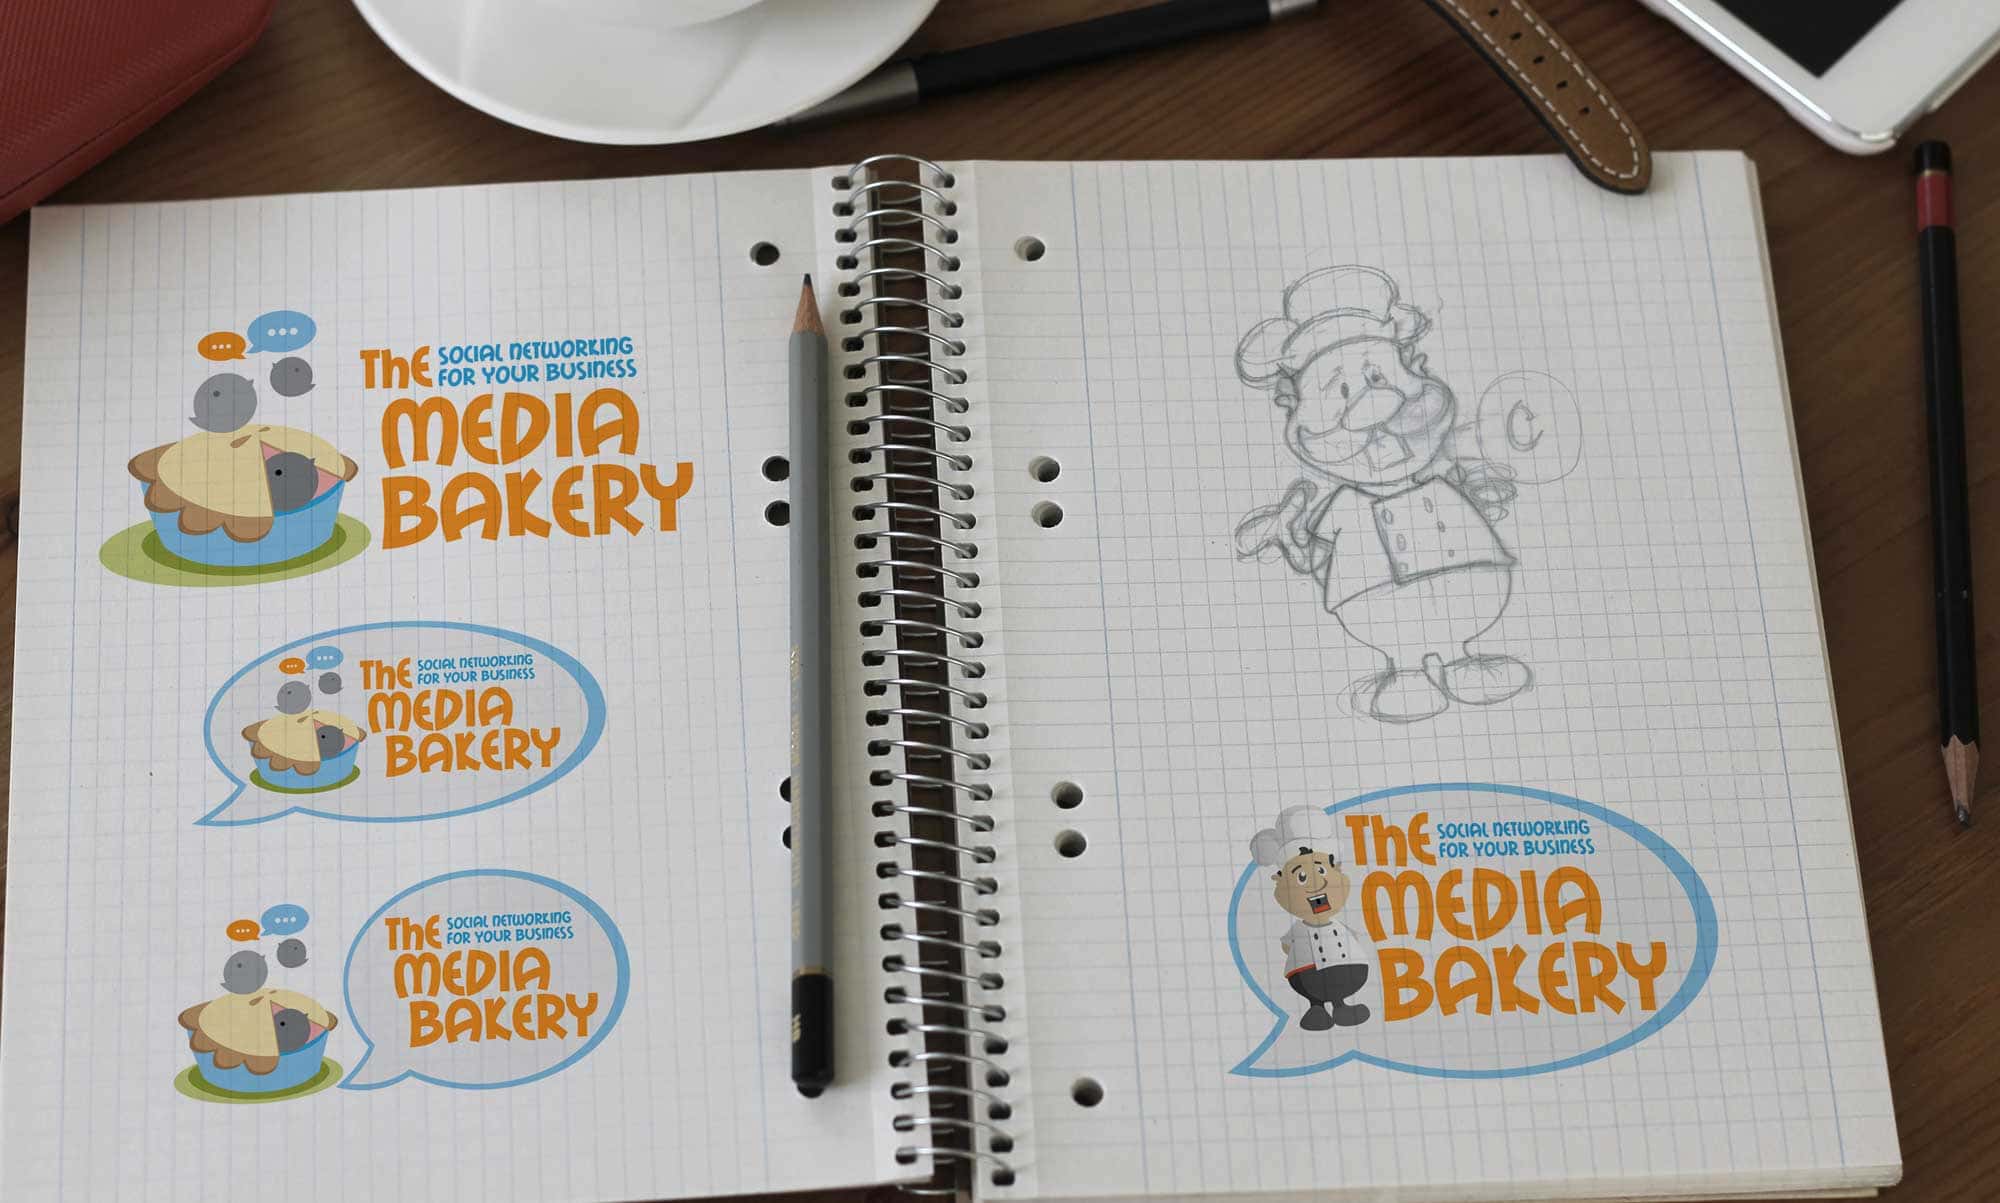 The Media Bakery branding